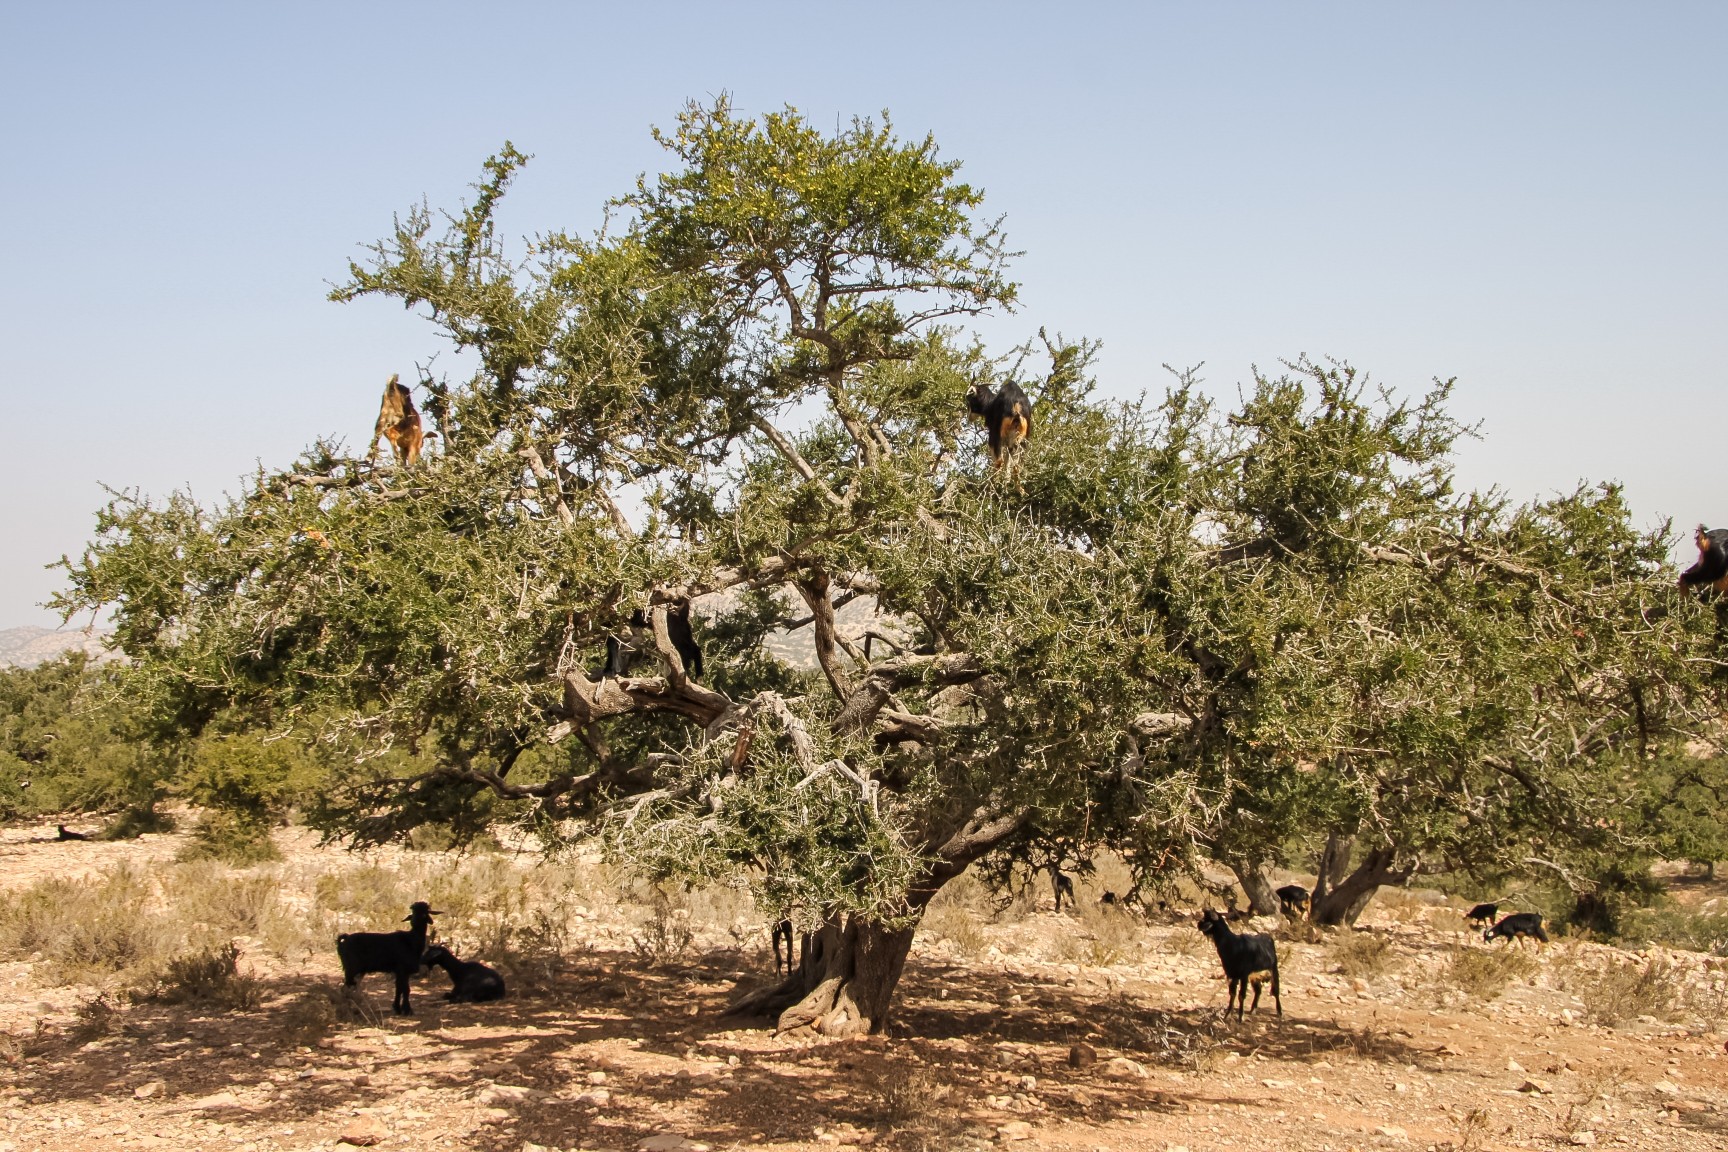 Ein Arganbaum – von ihm stammt das wertvolle Arganöl. Foto: Ksundria via Twenty20